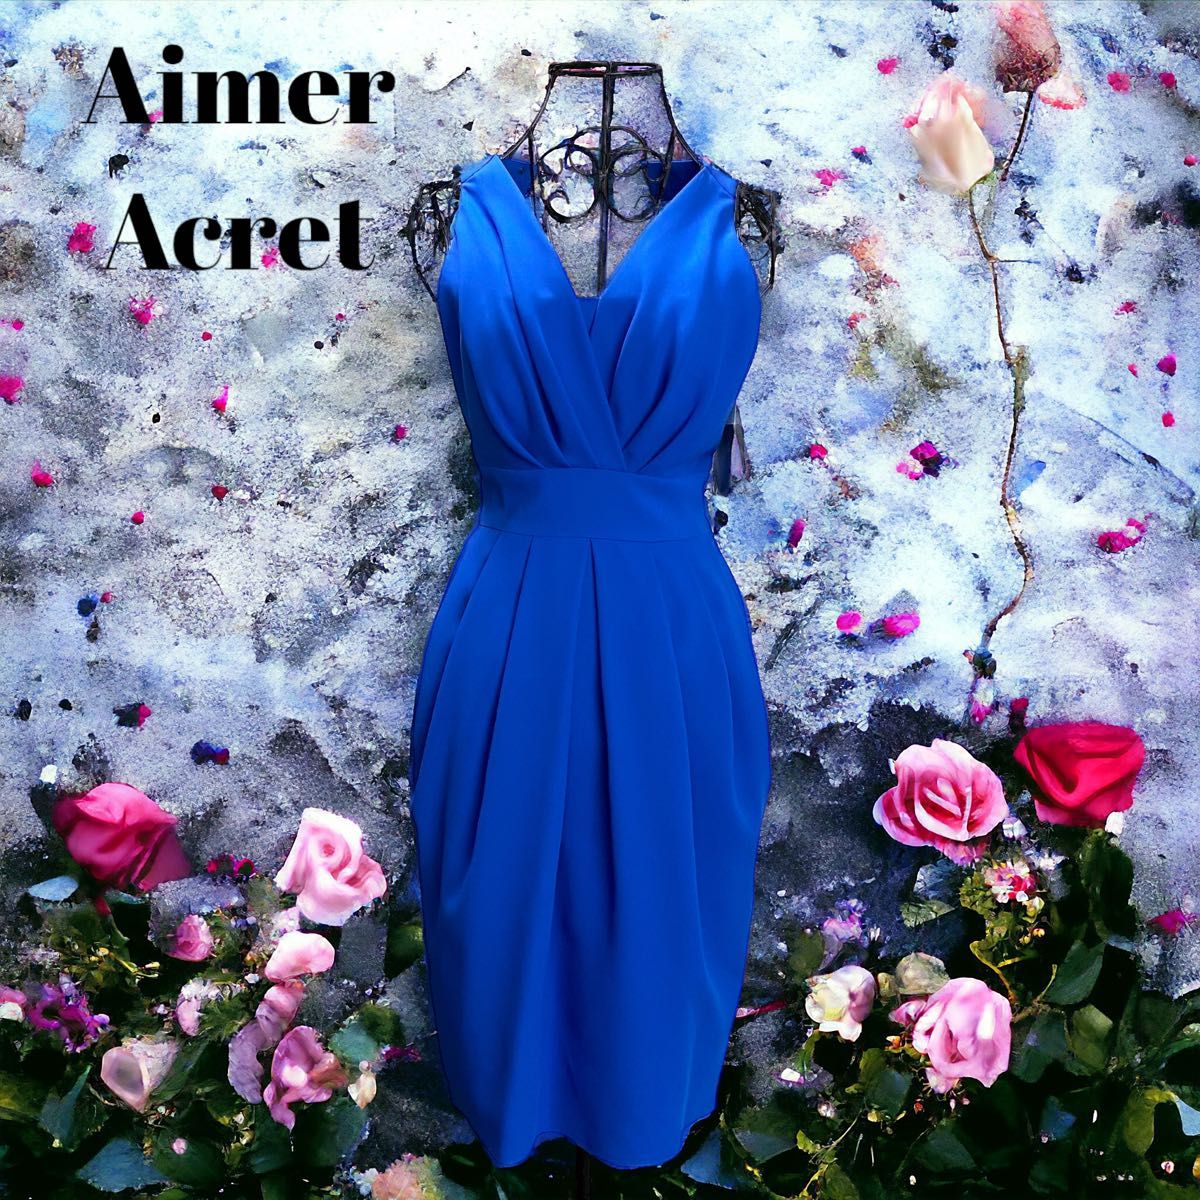 【新品タグ付き】Aimer Acret エメ パーティードレス イベント キャバ ダルブルー 定価29,160円